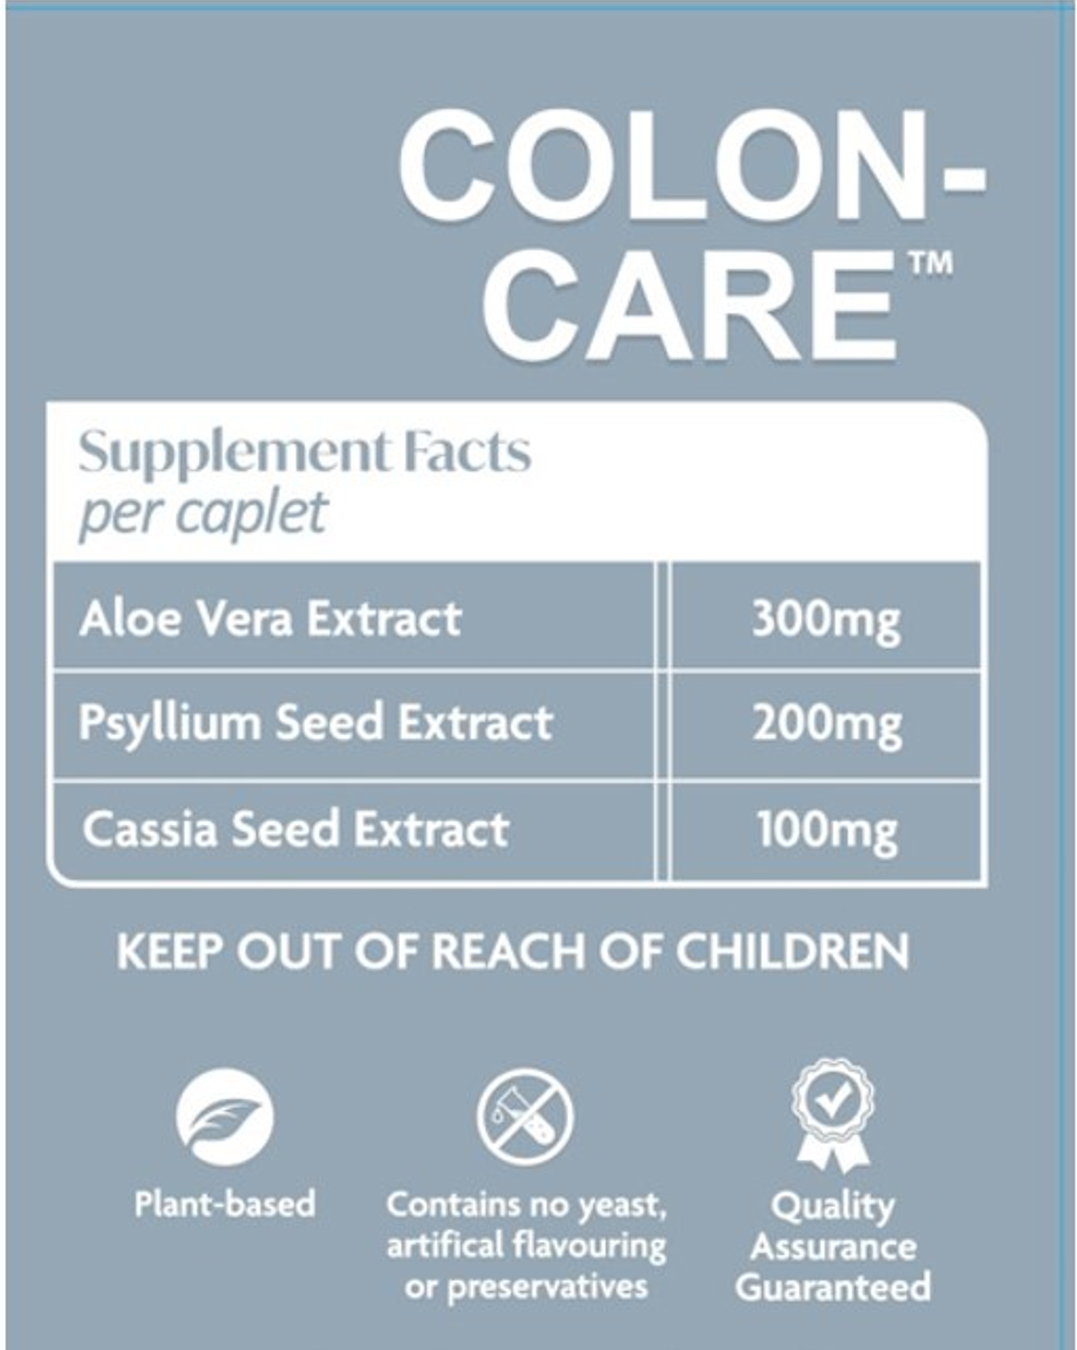 Colon Care